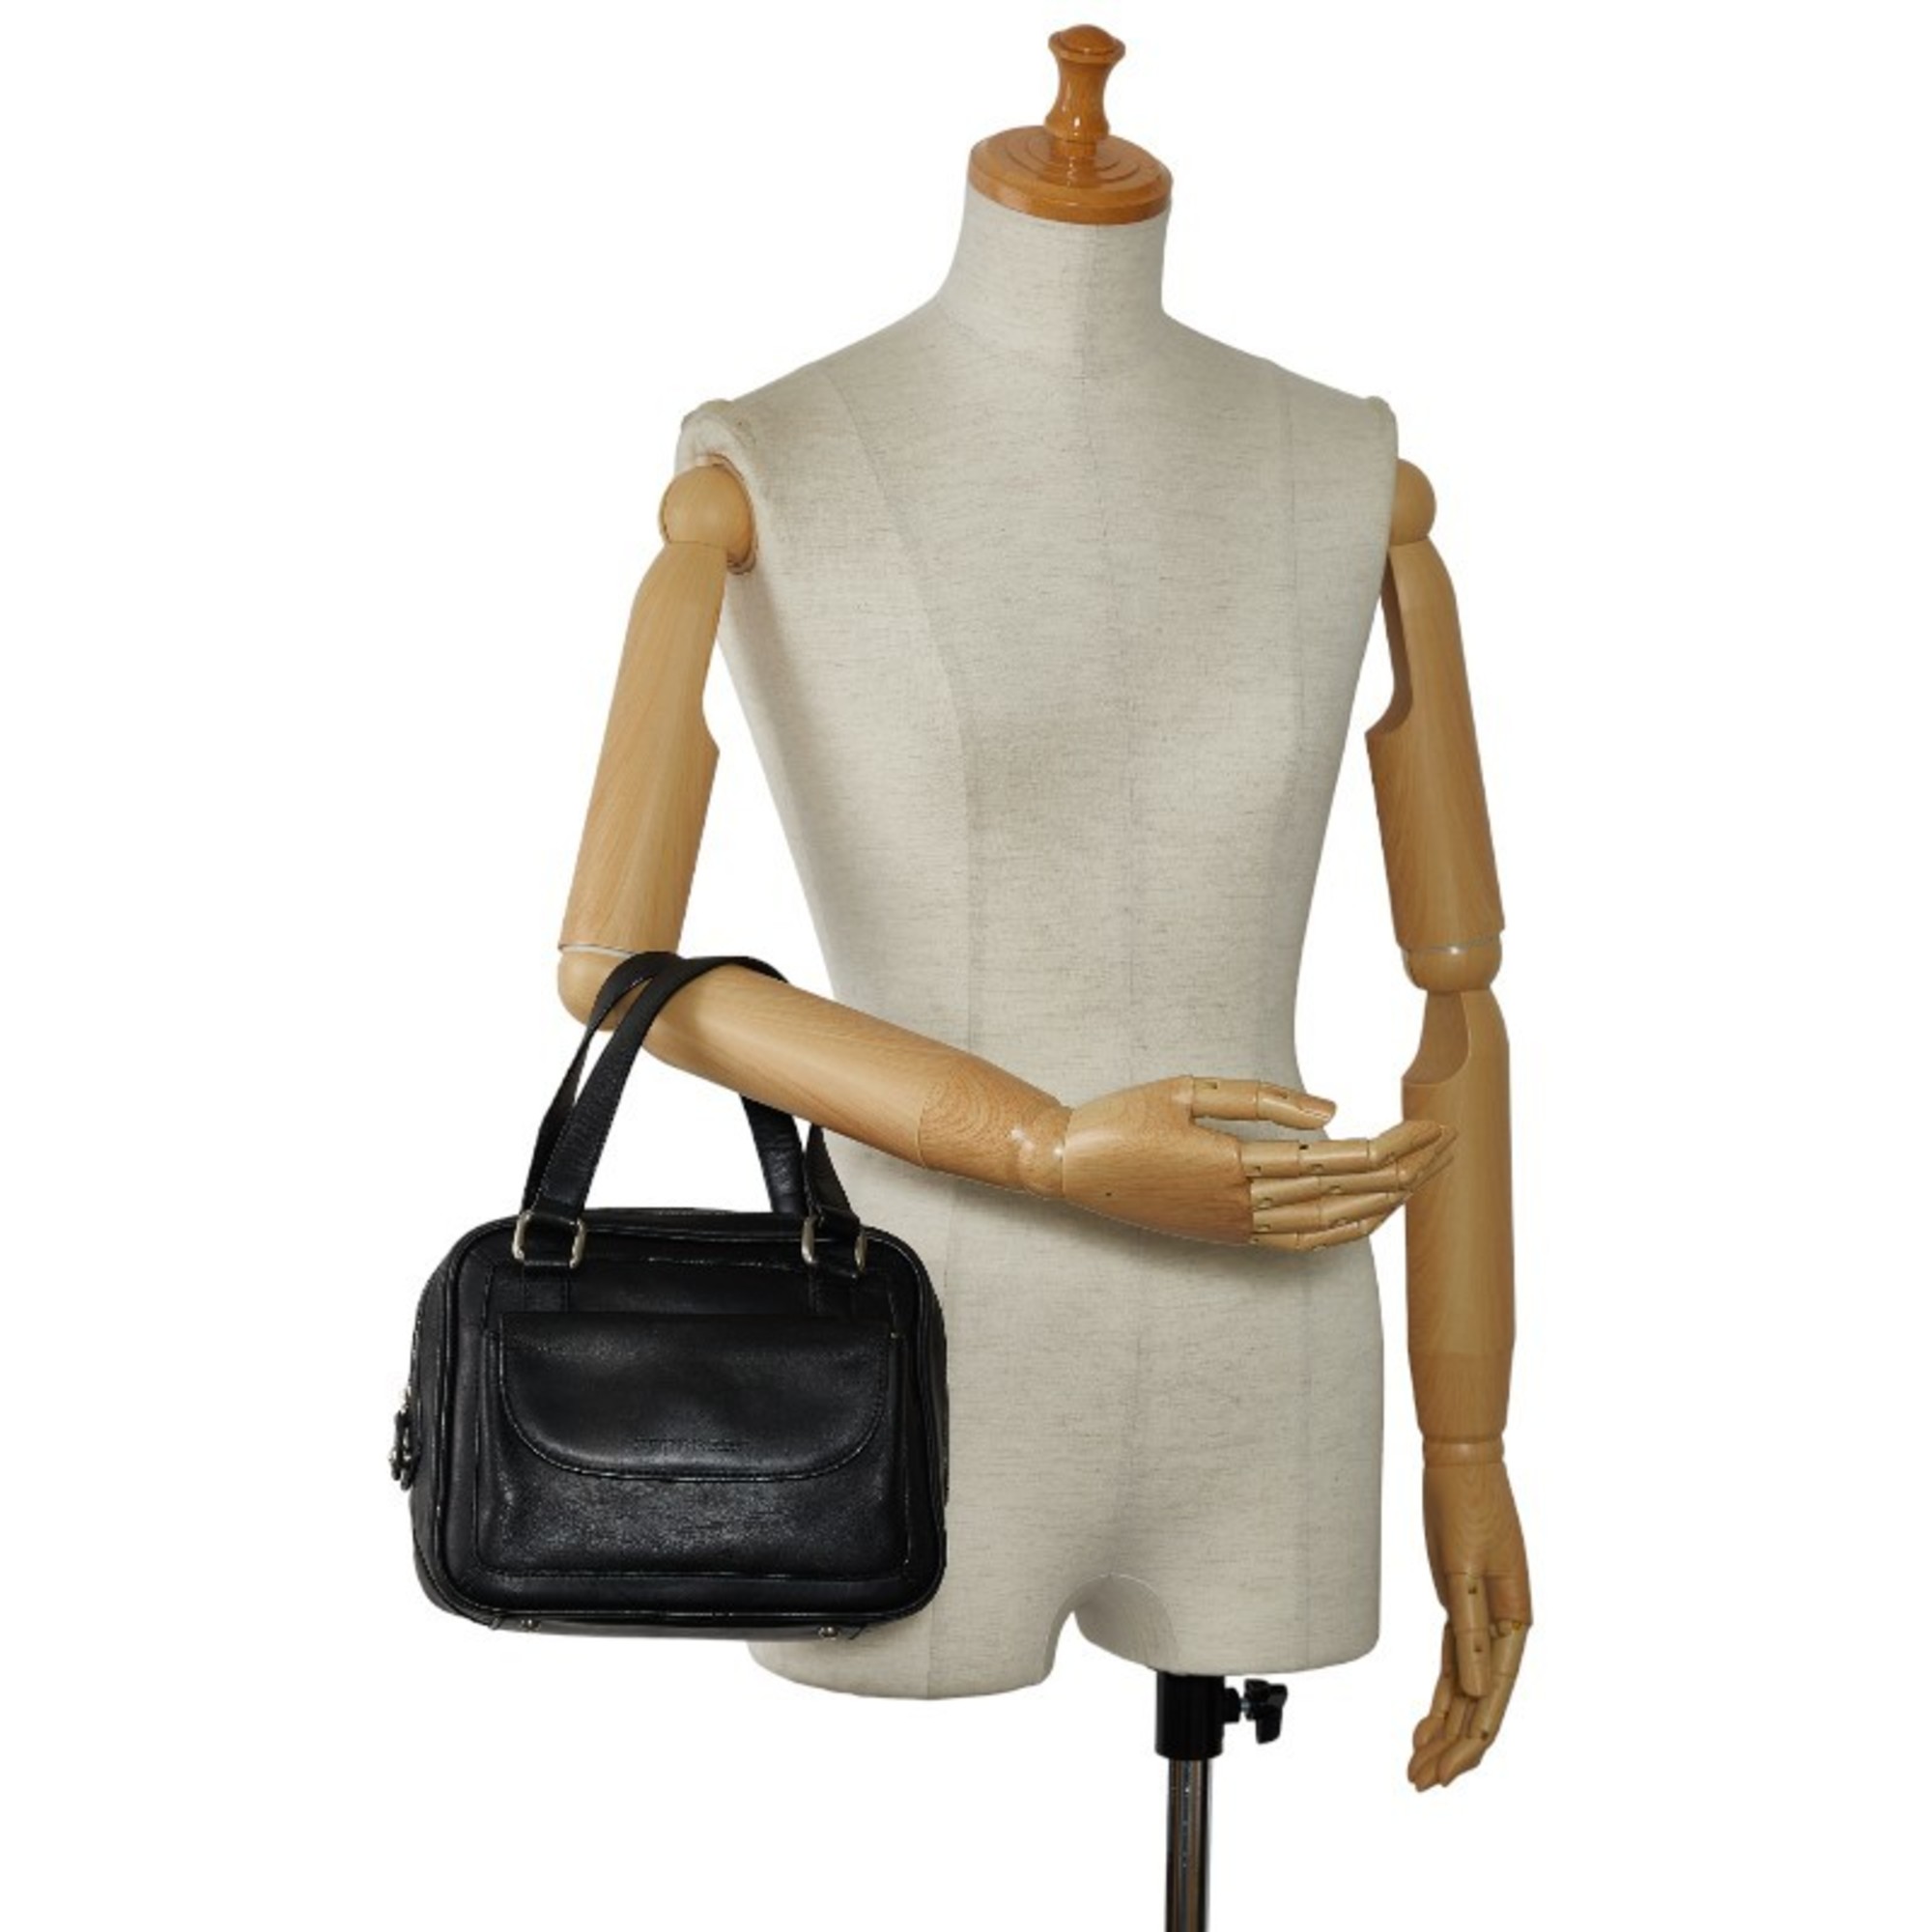 Burberry Nova Check Handbag Black Leather Women's BURBERRY